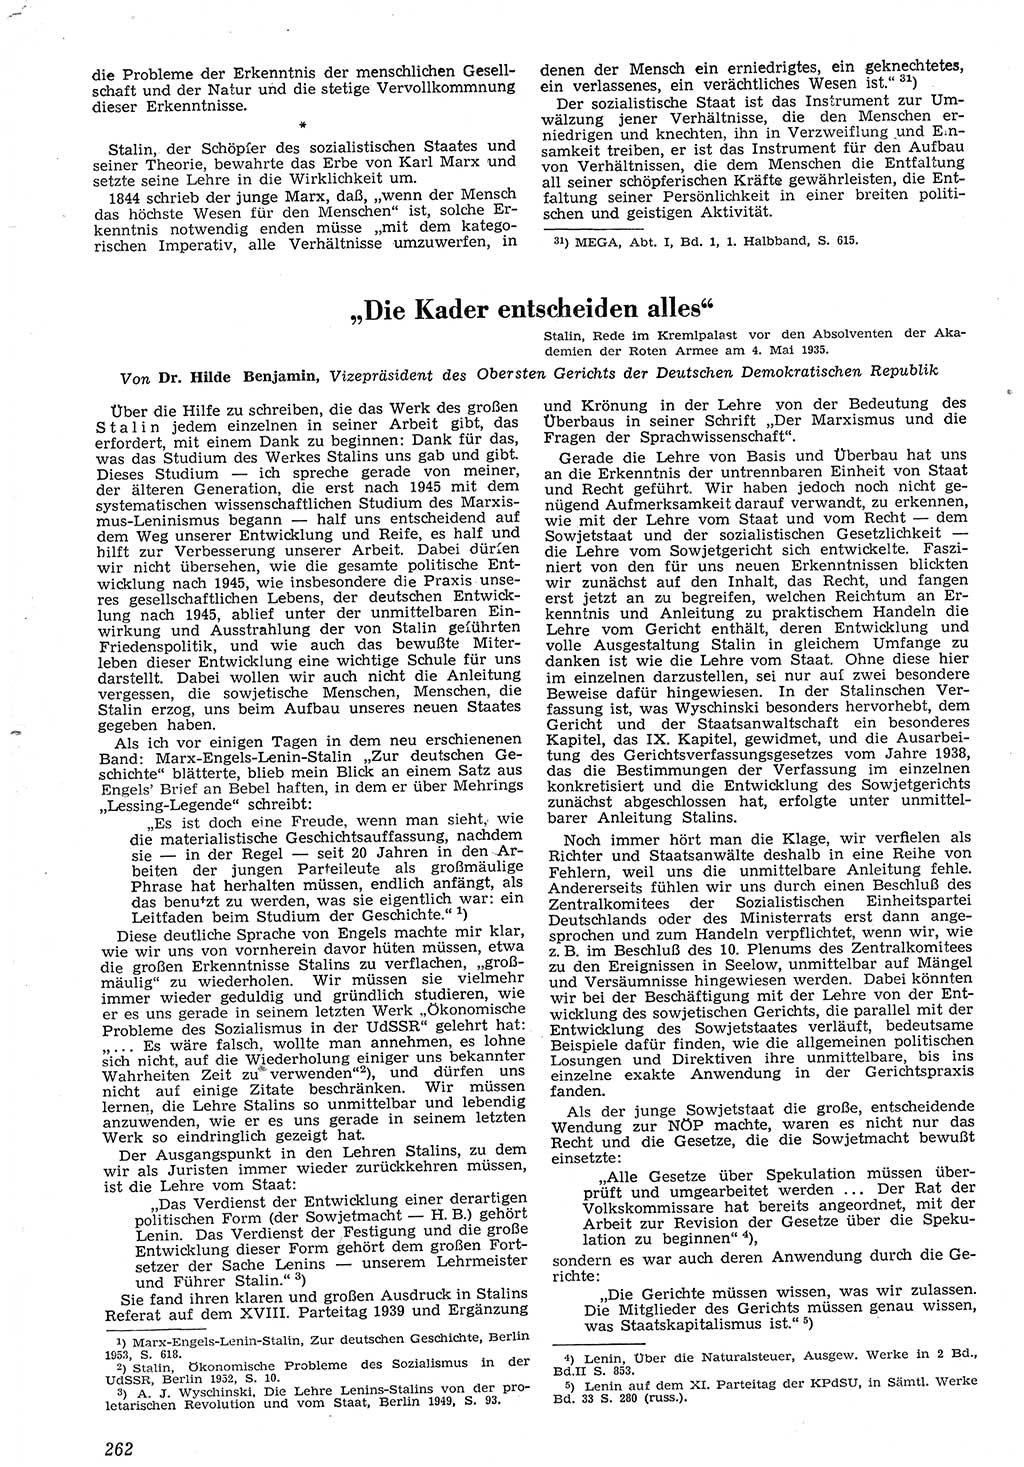 Neue Justiz (NJ), Zeitschrift für Recht und Rechtswissenschaft [Deutsche Demokratische Republik (DDR)], 7. Jahrgang 1953, Seite 262 (NJ DDR 1953, S. 262)